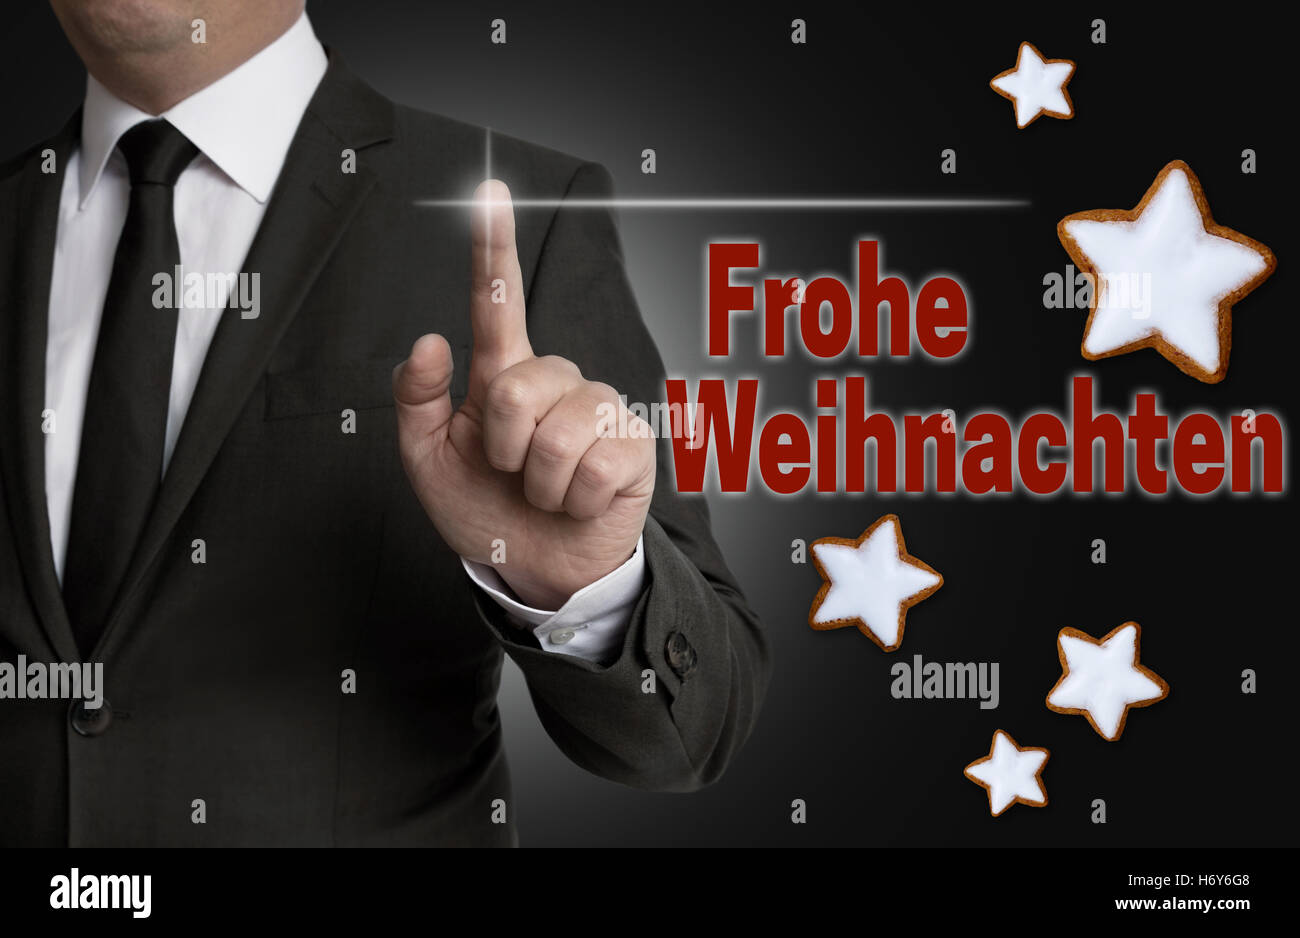 Frohe Weihnachten (en allemand Joyeux Noël) écran tactile est exploité par un homme d'affaires. Banque D'Images